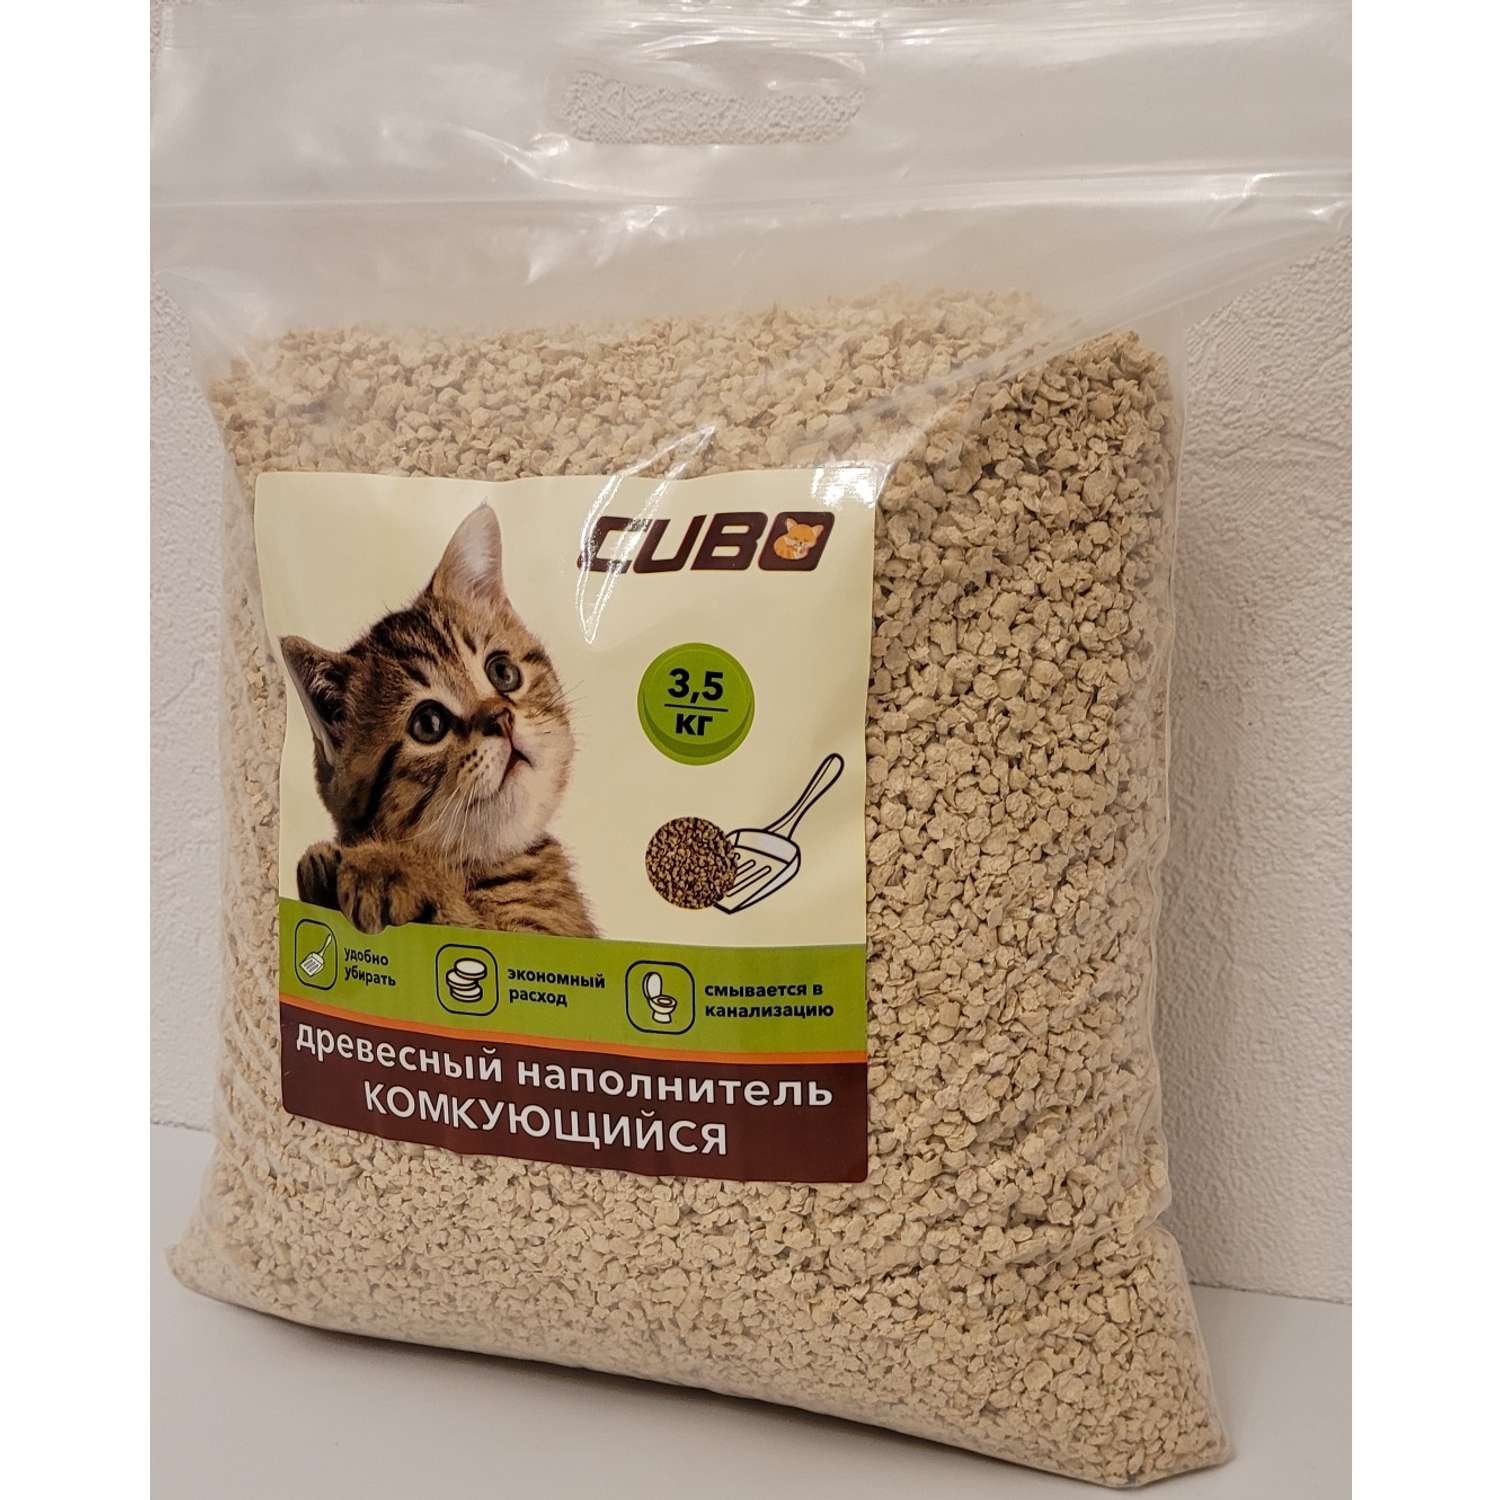 Наполнитель для кошек CUBO древесный комкующийся 3.5 кг - фото 3